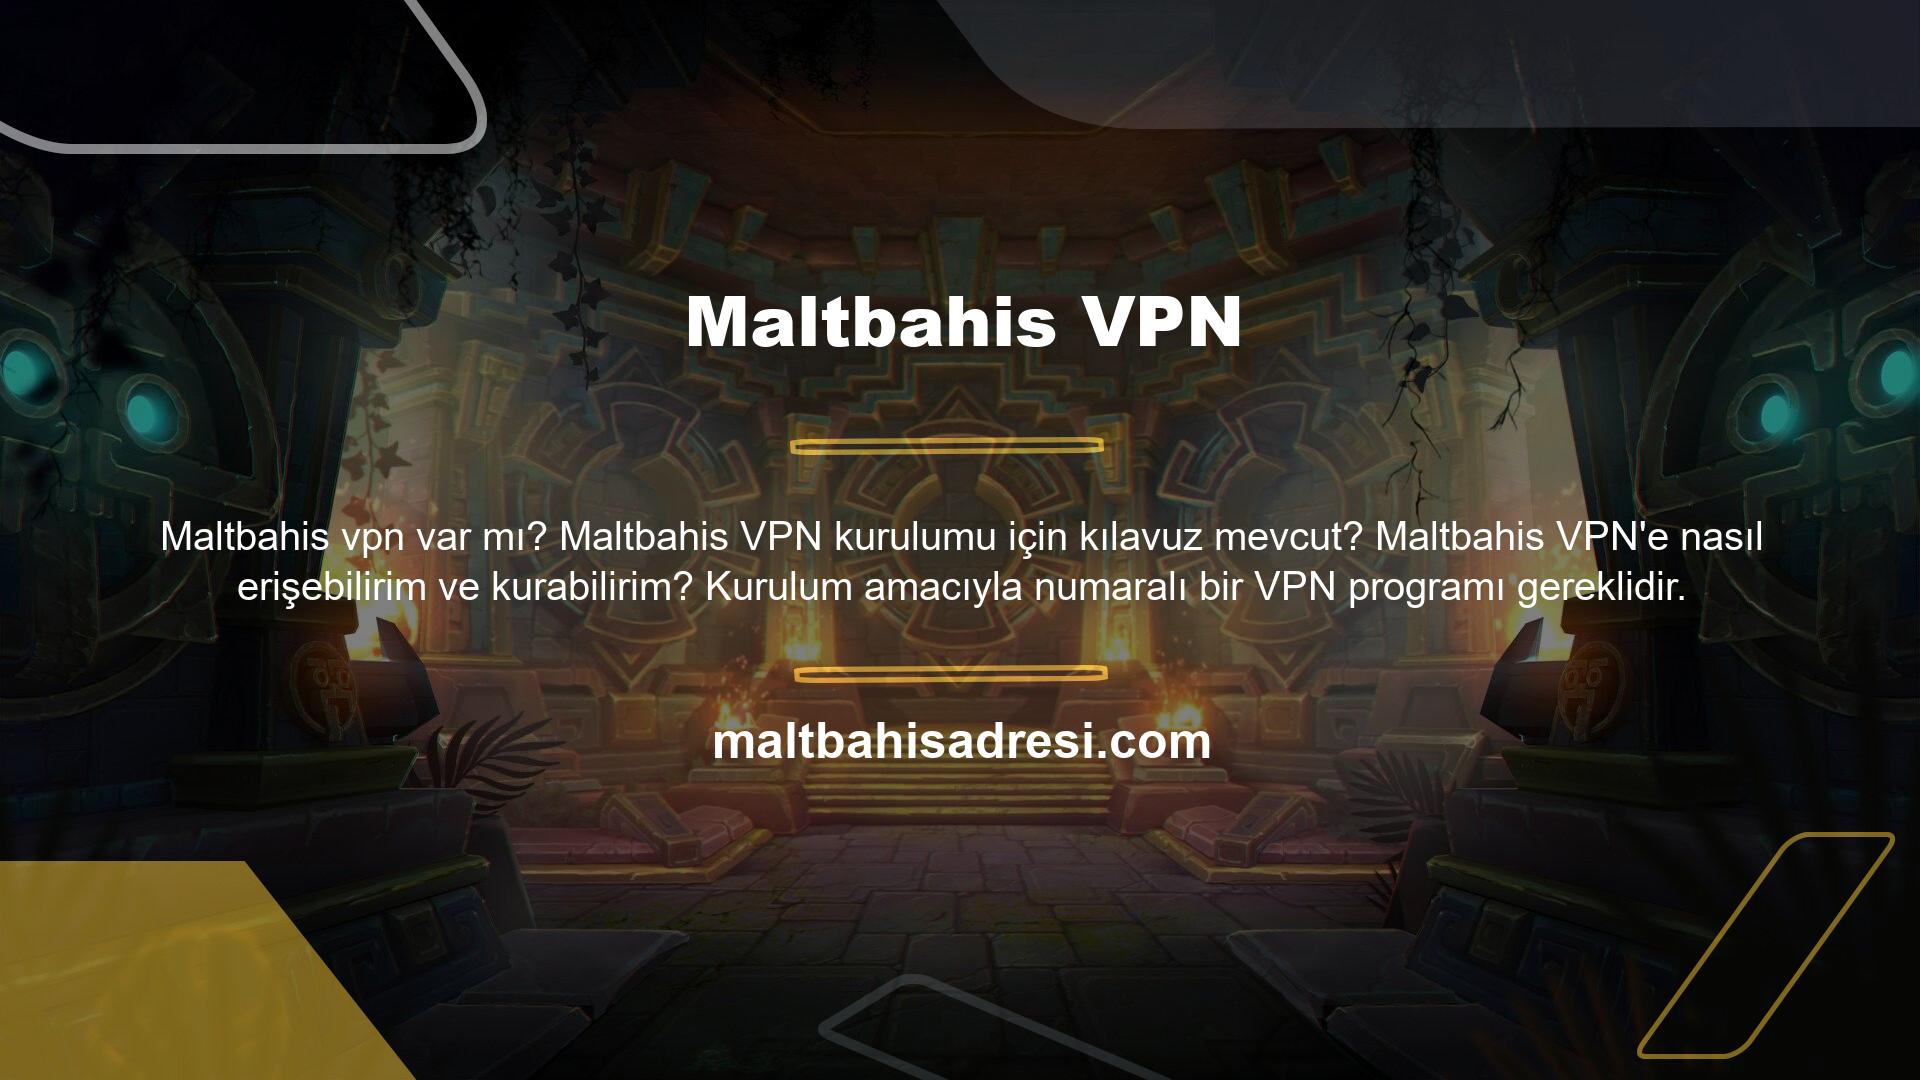 İnternet'te gezinmek için çok sayıda ücretsiz VPN hizmeti mevcuttur